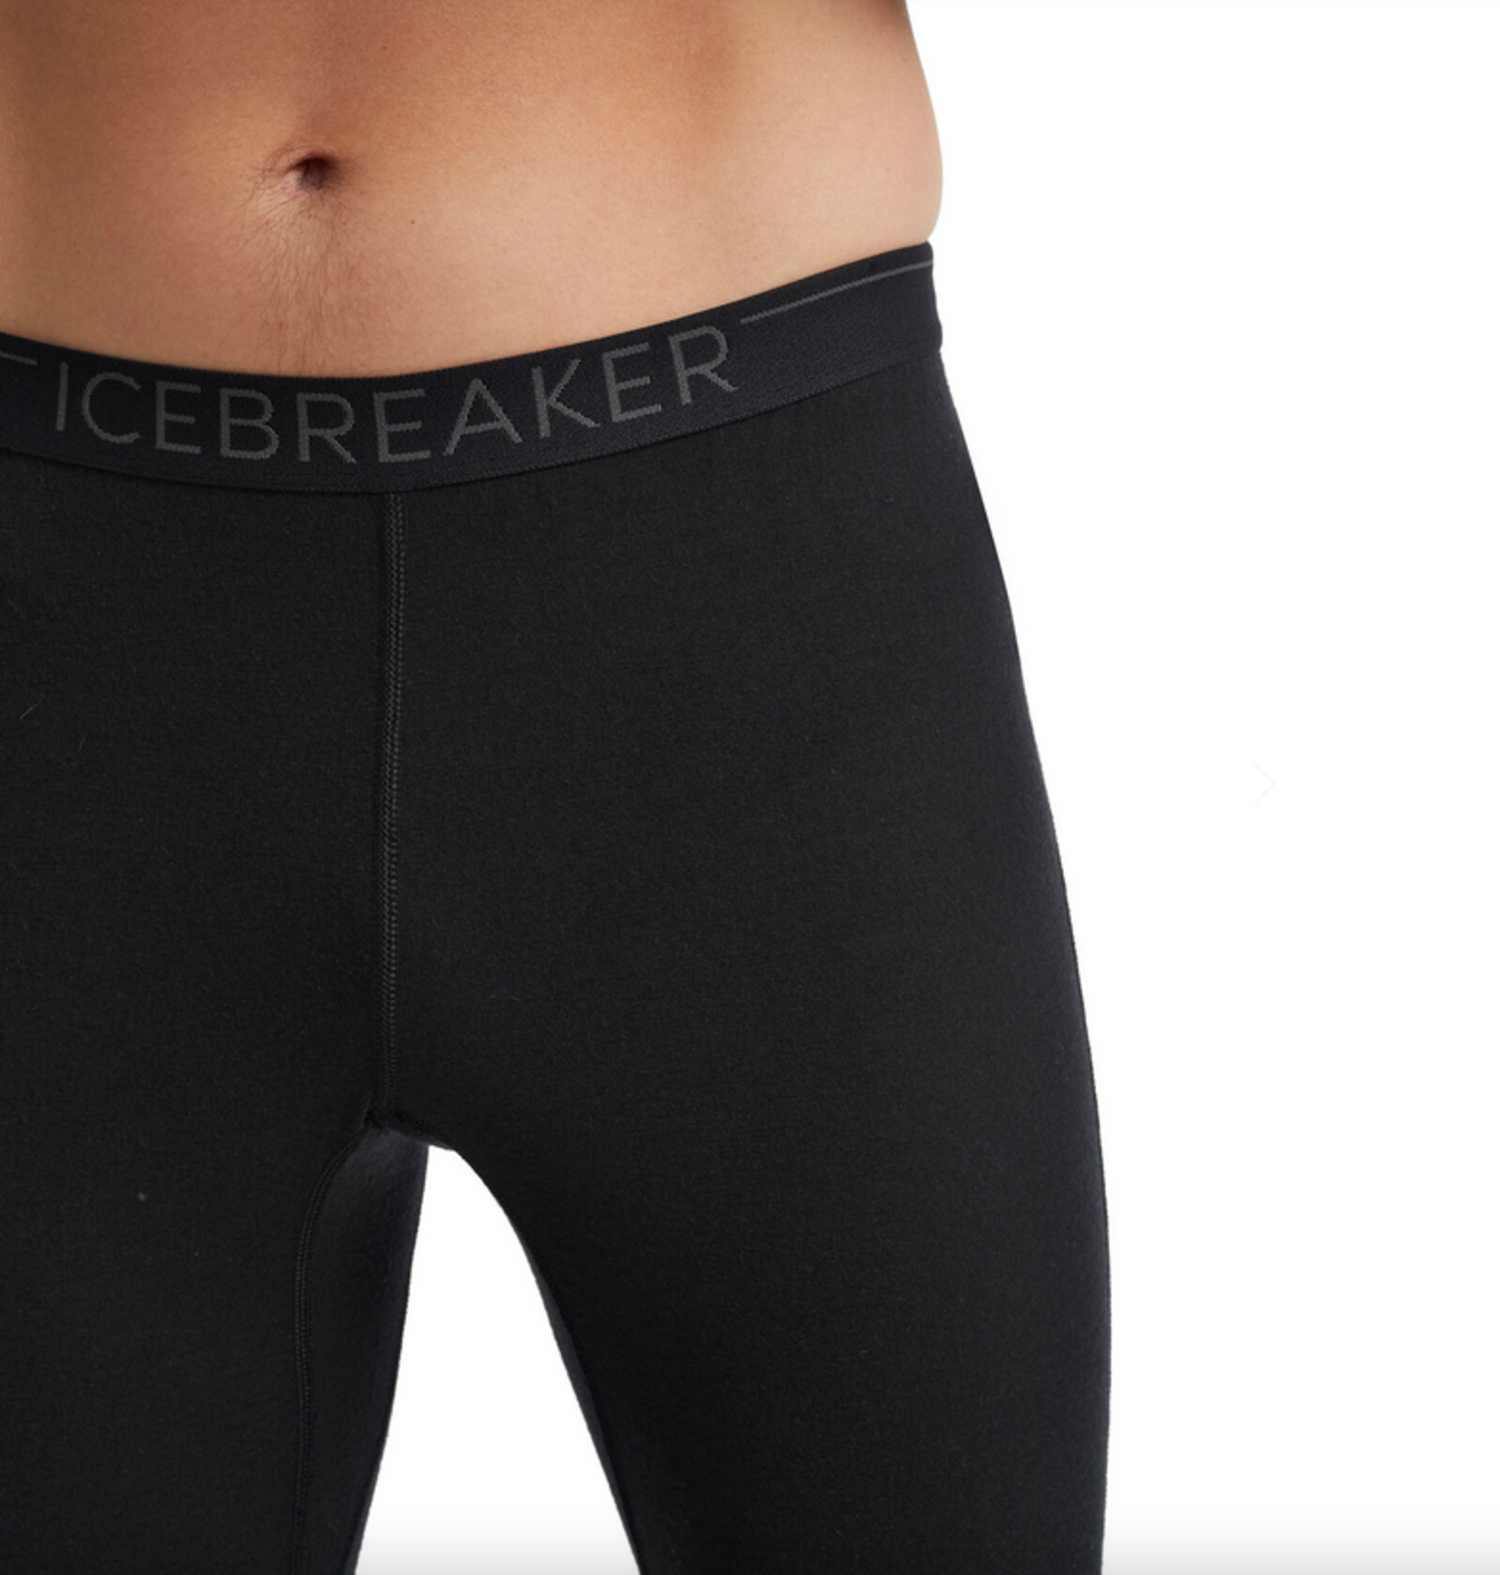 https://cdn.shoplightspeed.com/shops/633741/files/39370343/1500x4000x3/icebreaker-mens-200-oasis-leggings-black.jpg